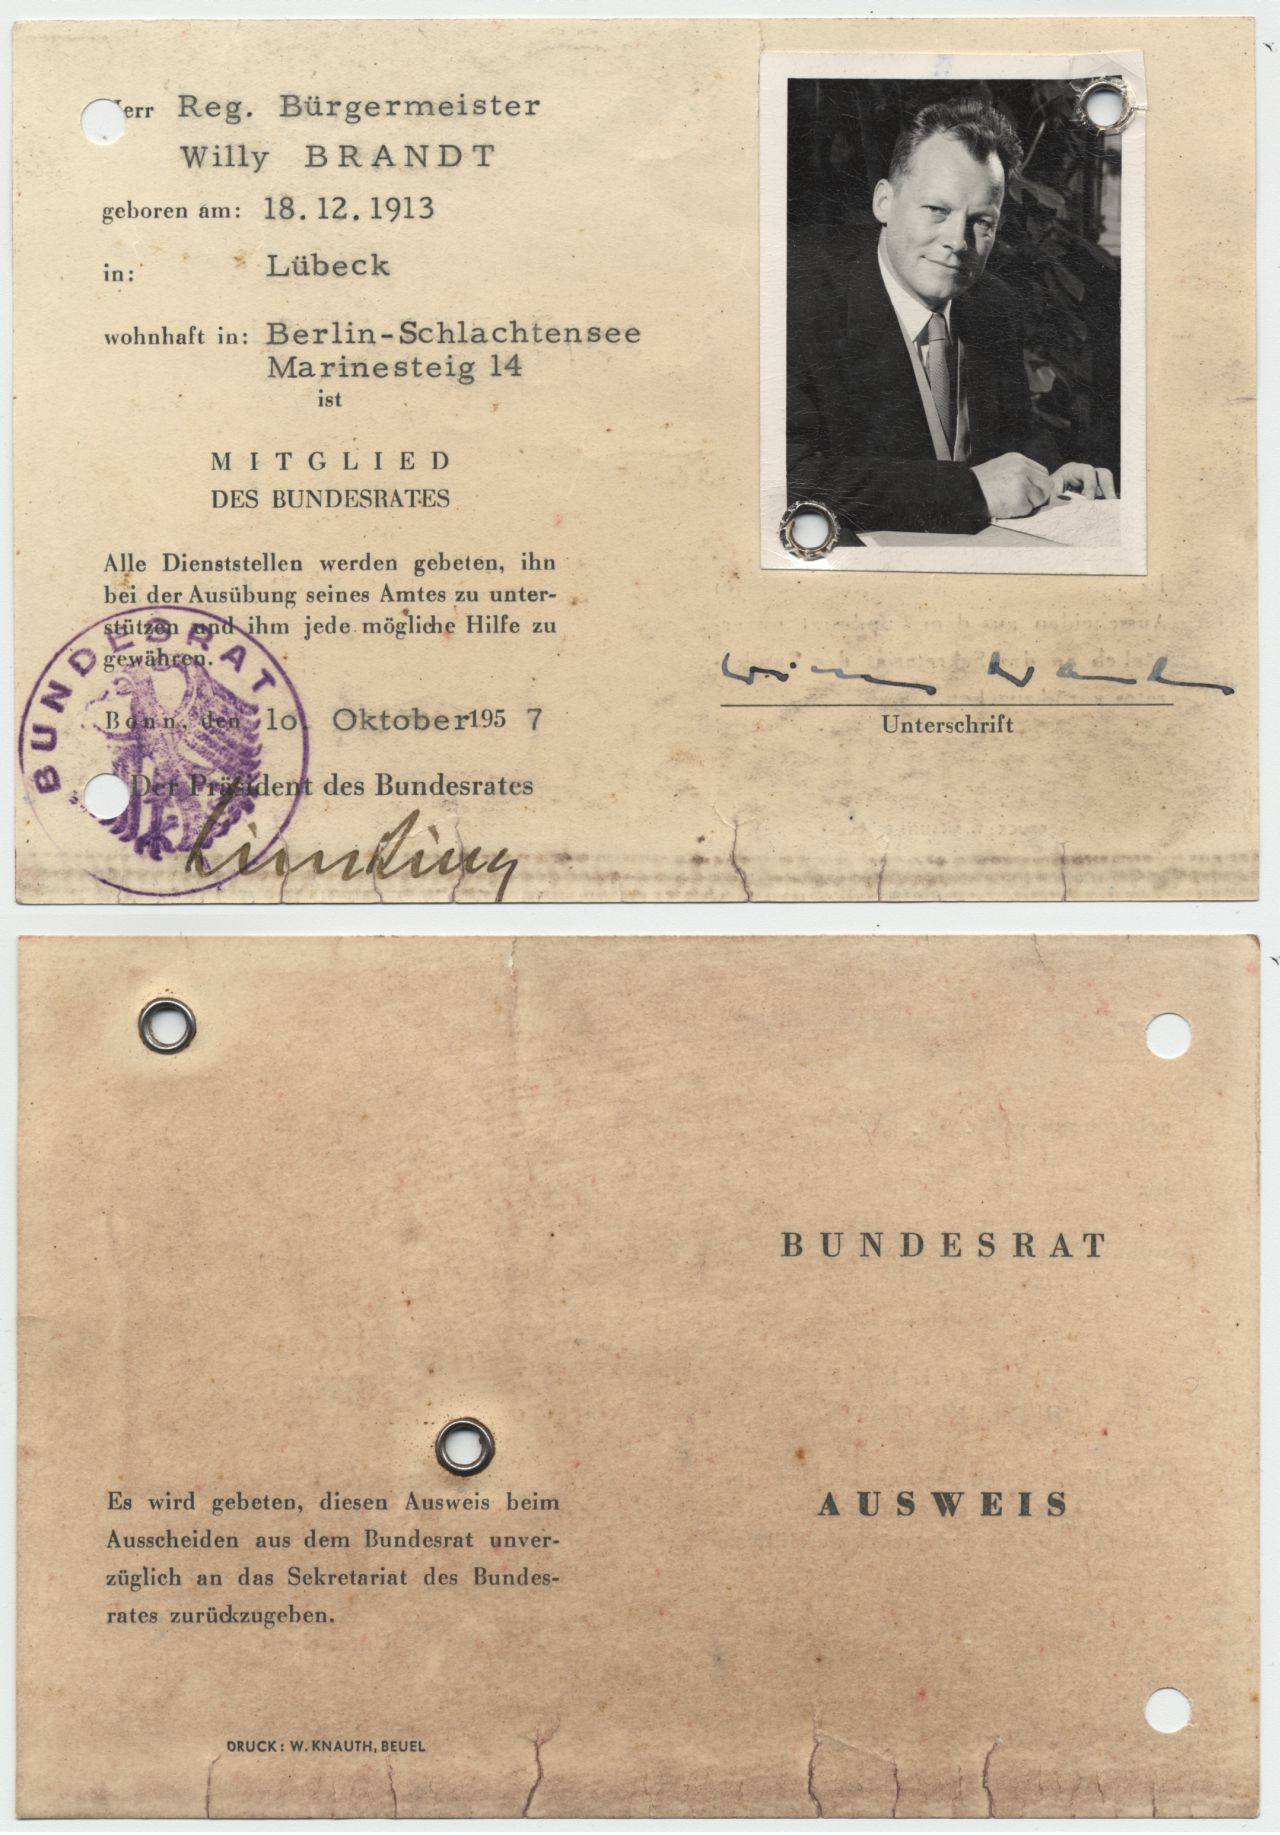 Dokument im Postkartenformat mit Angaben zur Person Willy Brandt. Unterzeichnet vom Päsidenten des Bundesrates. Links in der Ecke Stempel mit dem Wort Bundesrat und dem Bundesadler. Rechts Passfoto von Willy Brandt im Anzug. Darunter seine Unterschrift.